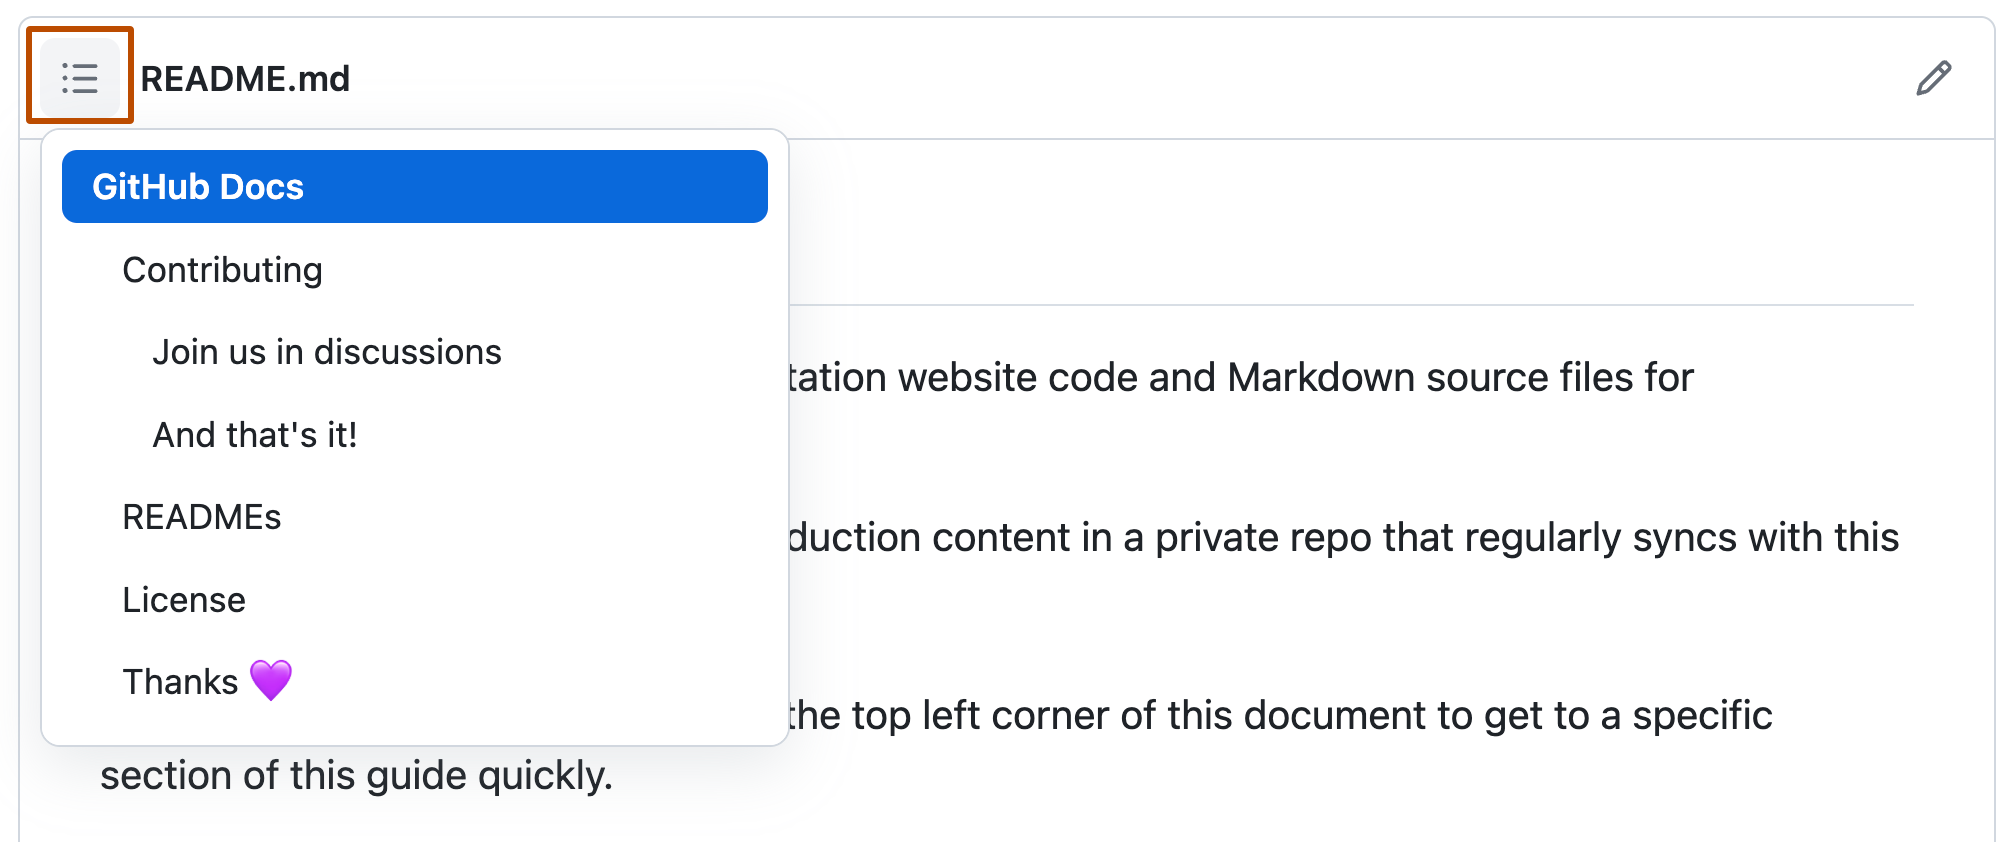 Captura de pantalla del archivo LÉAME en el repositorio de código abierto GitHub Docs con el menú desplegable de la tabla de contenido expuesto. El icono de la tabla de contenido aparece en naranja oscuro.